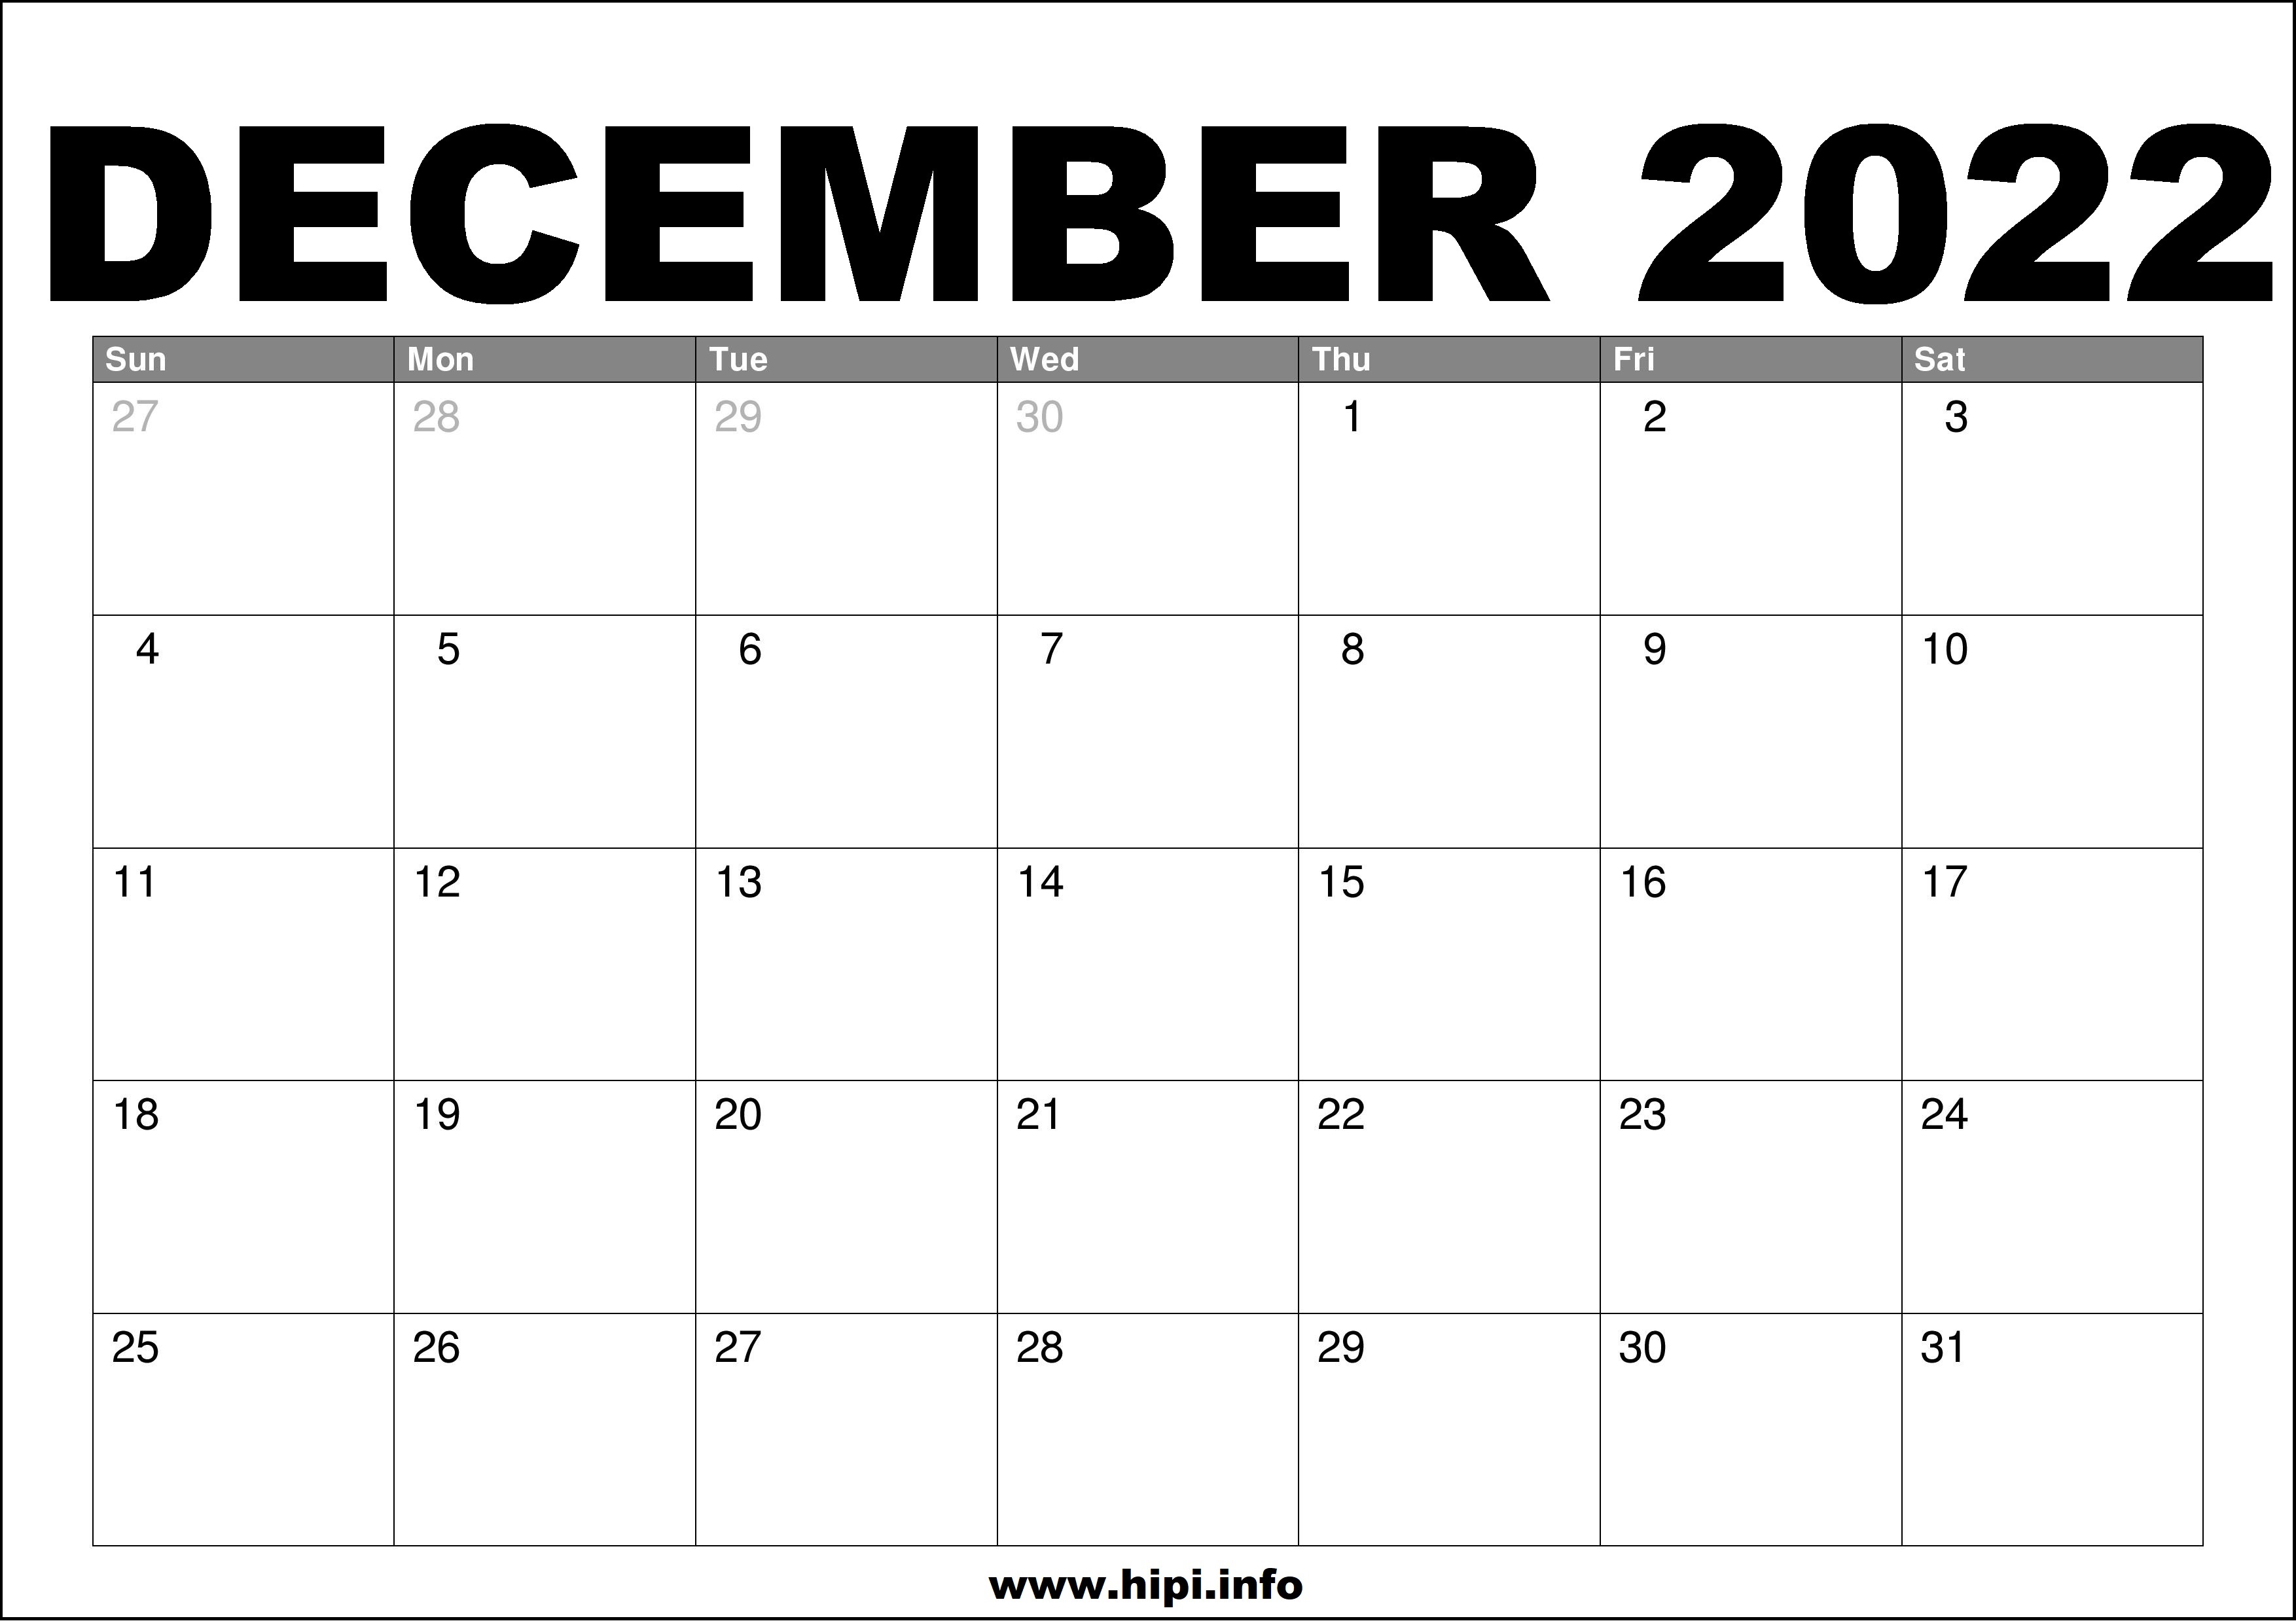 December 2022 Calendar Printable Free Hipi.info Calendars Printable